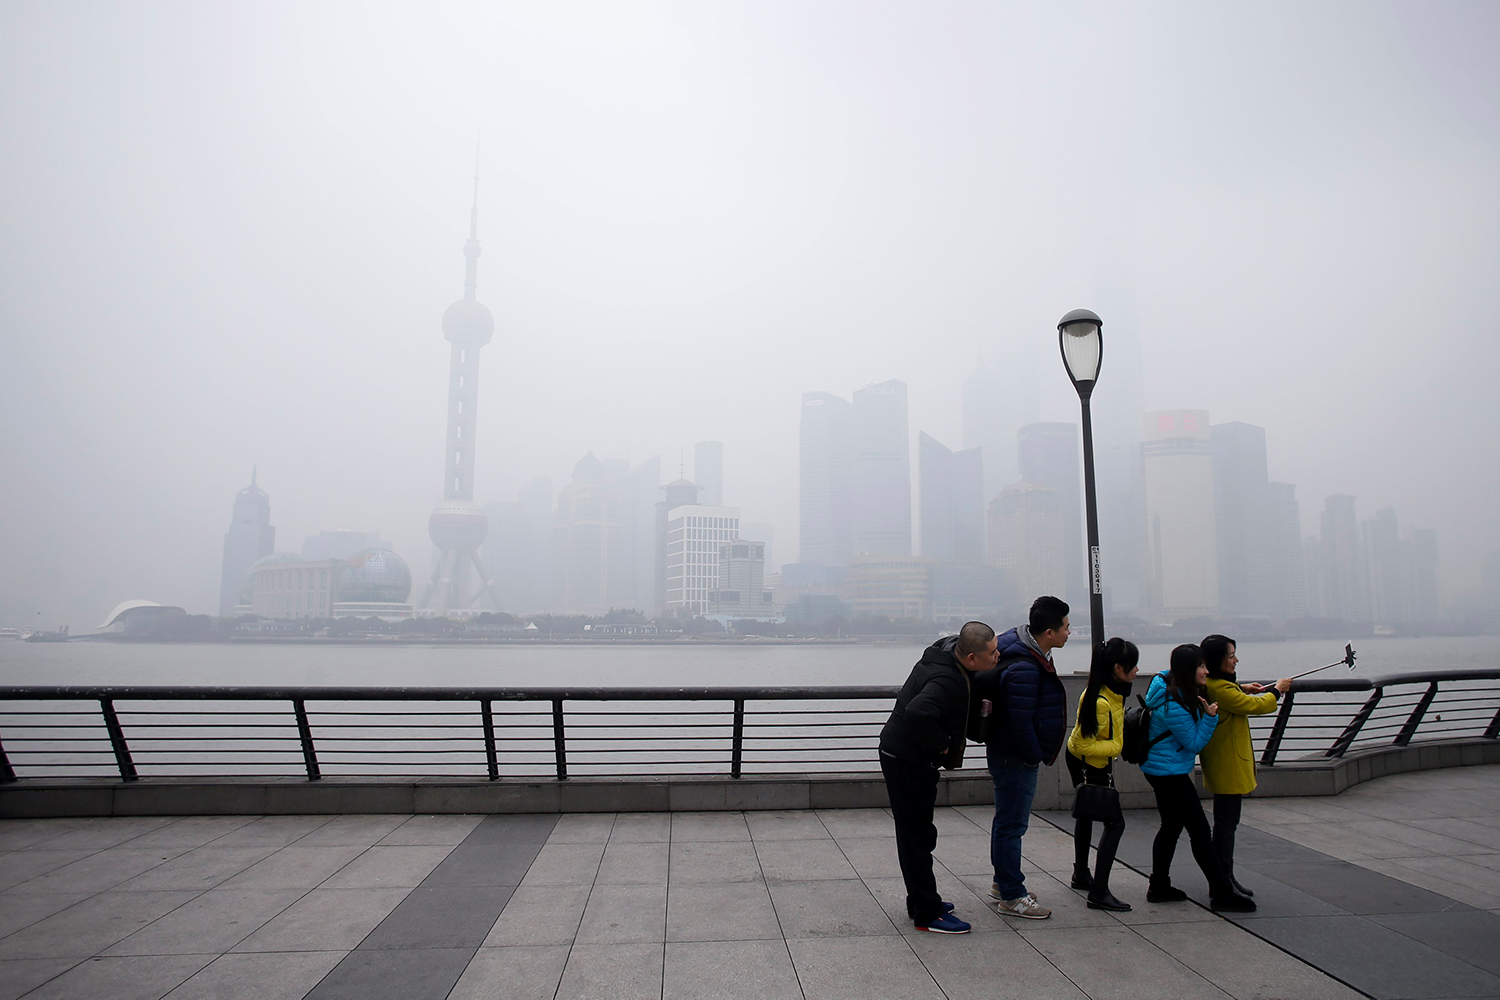 Pekín emite su segunda alerta roja por contaminación